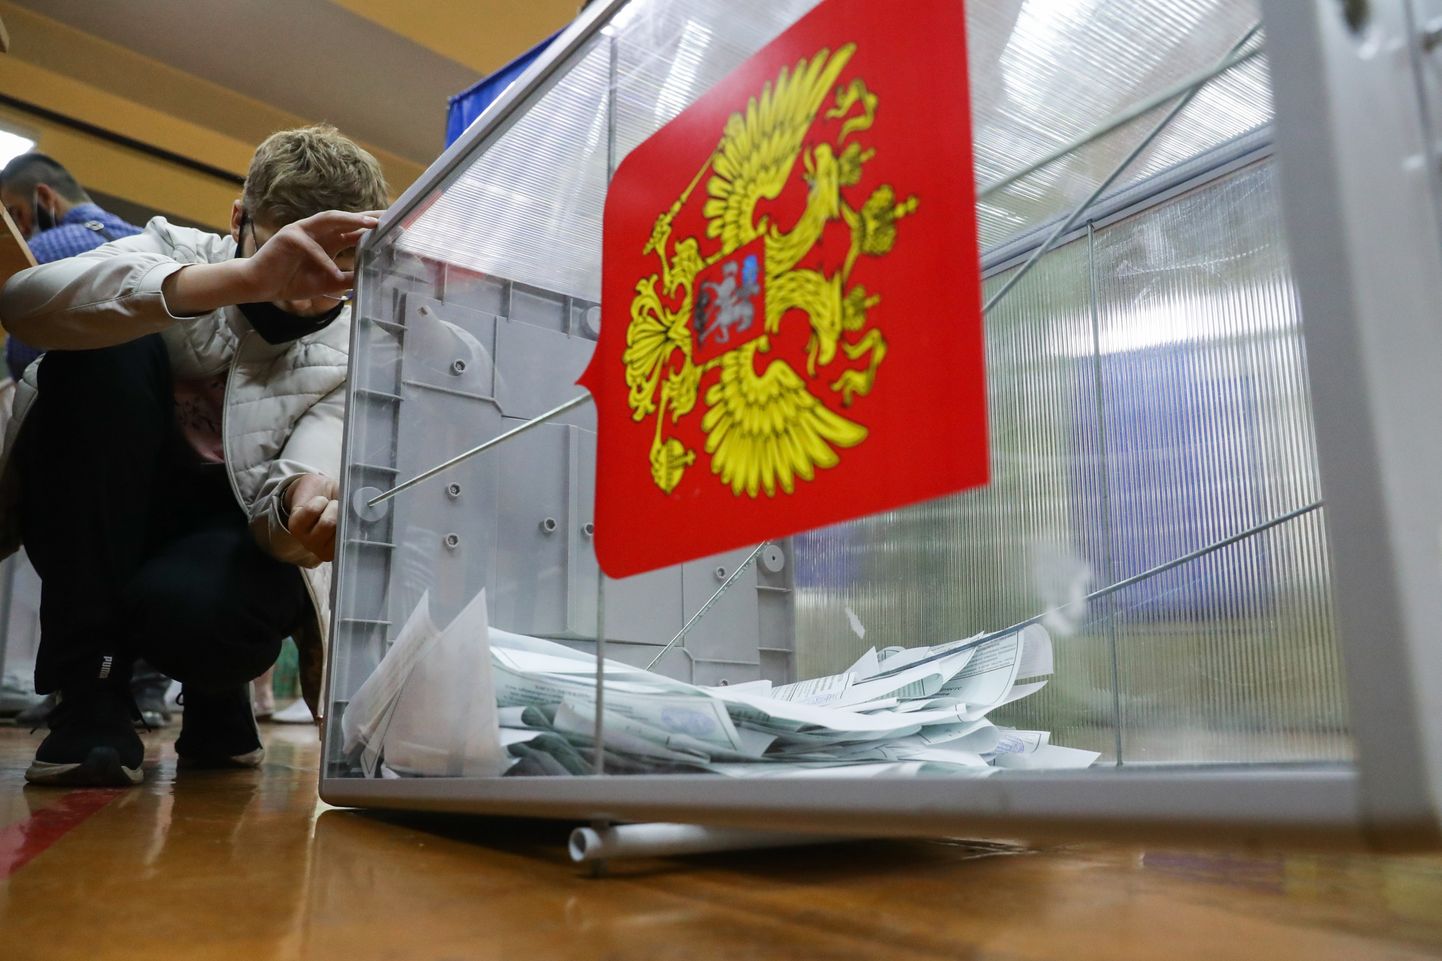 Venemaa põhiseaduse referendumi hääletuskast. Pilt on illustratiivne.